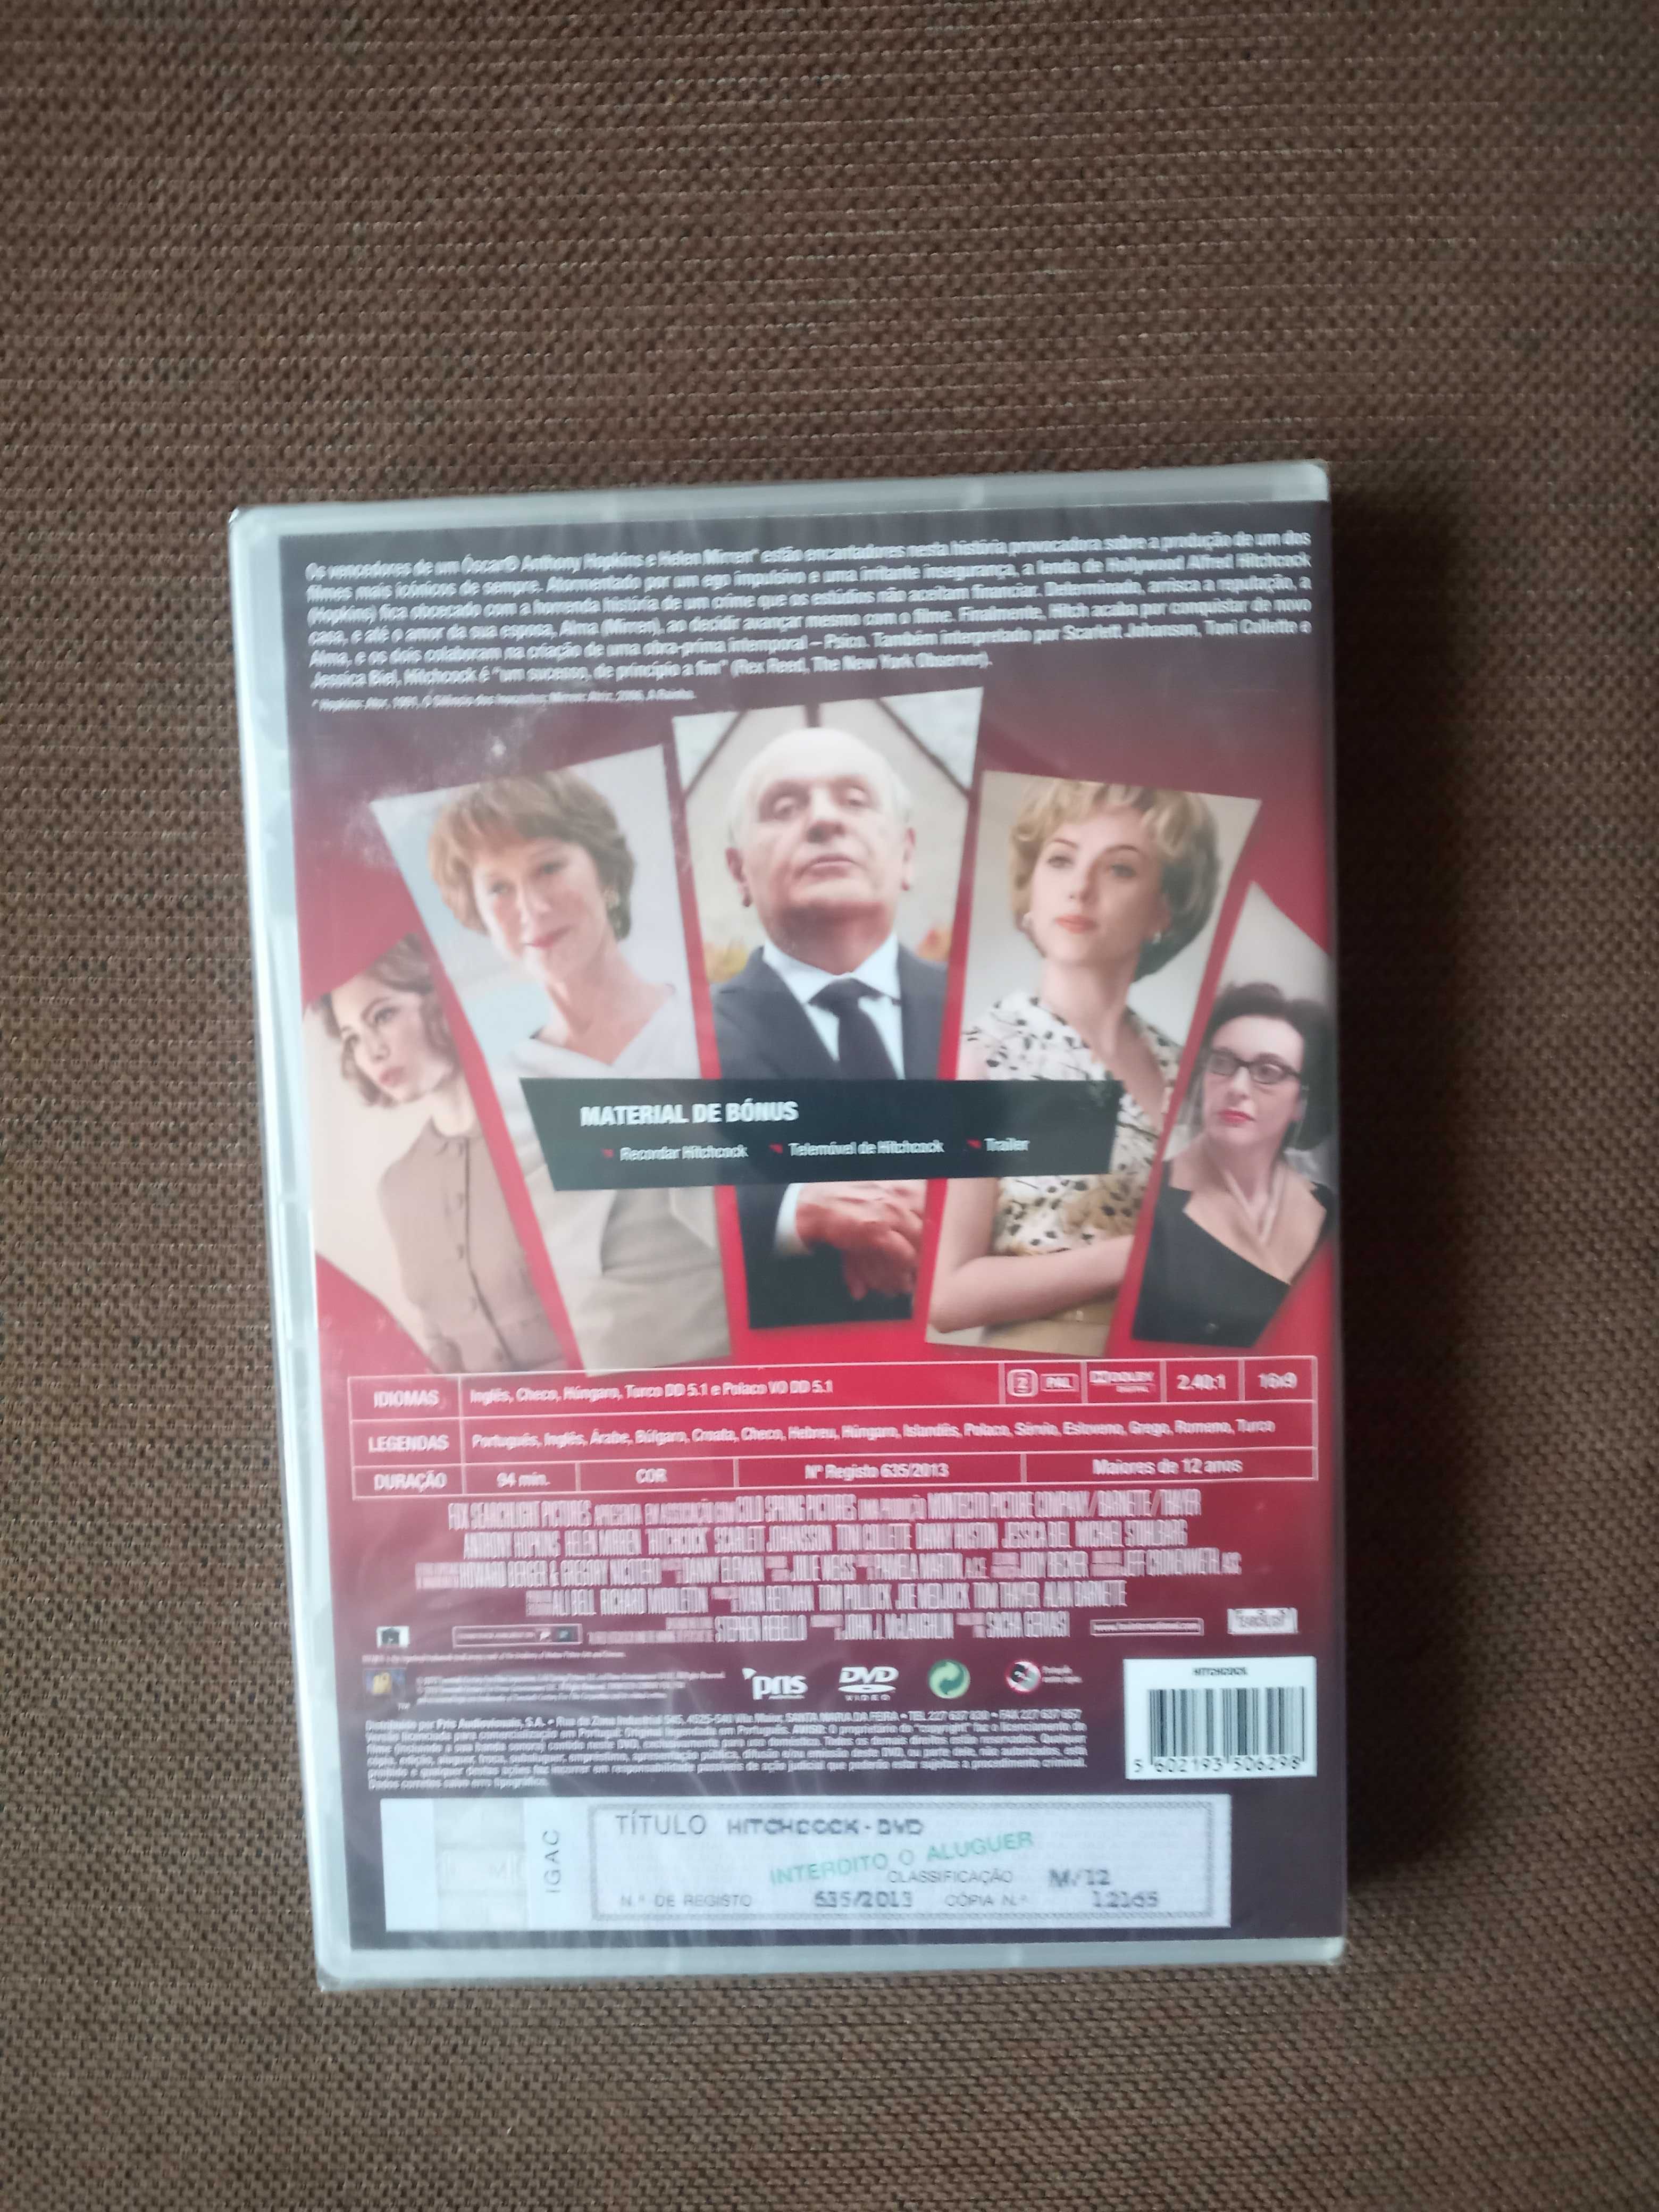 filme dvd original - hitchcock .- selado